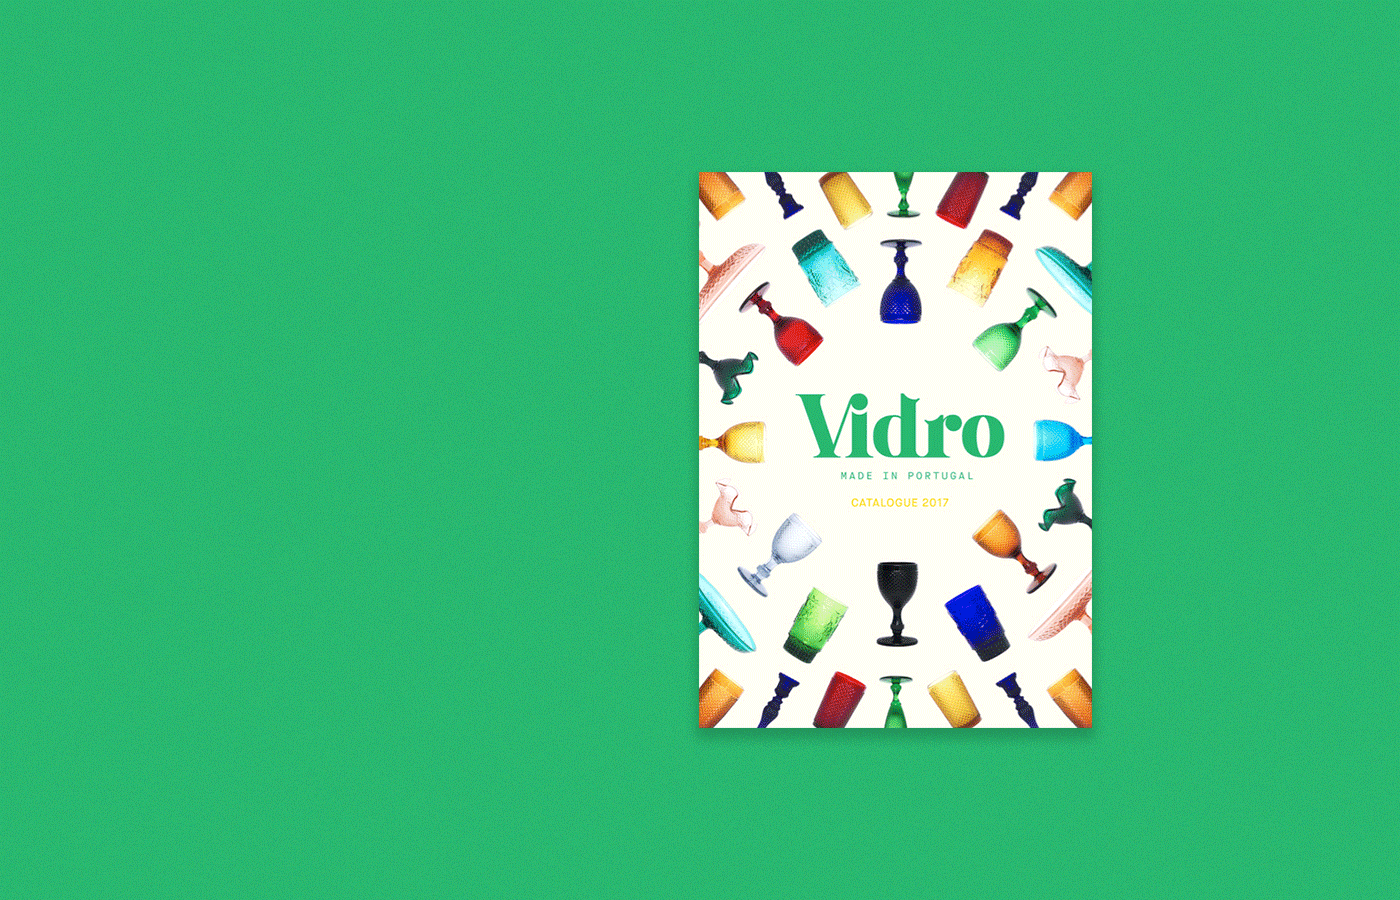 Vidro-Branding-08